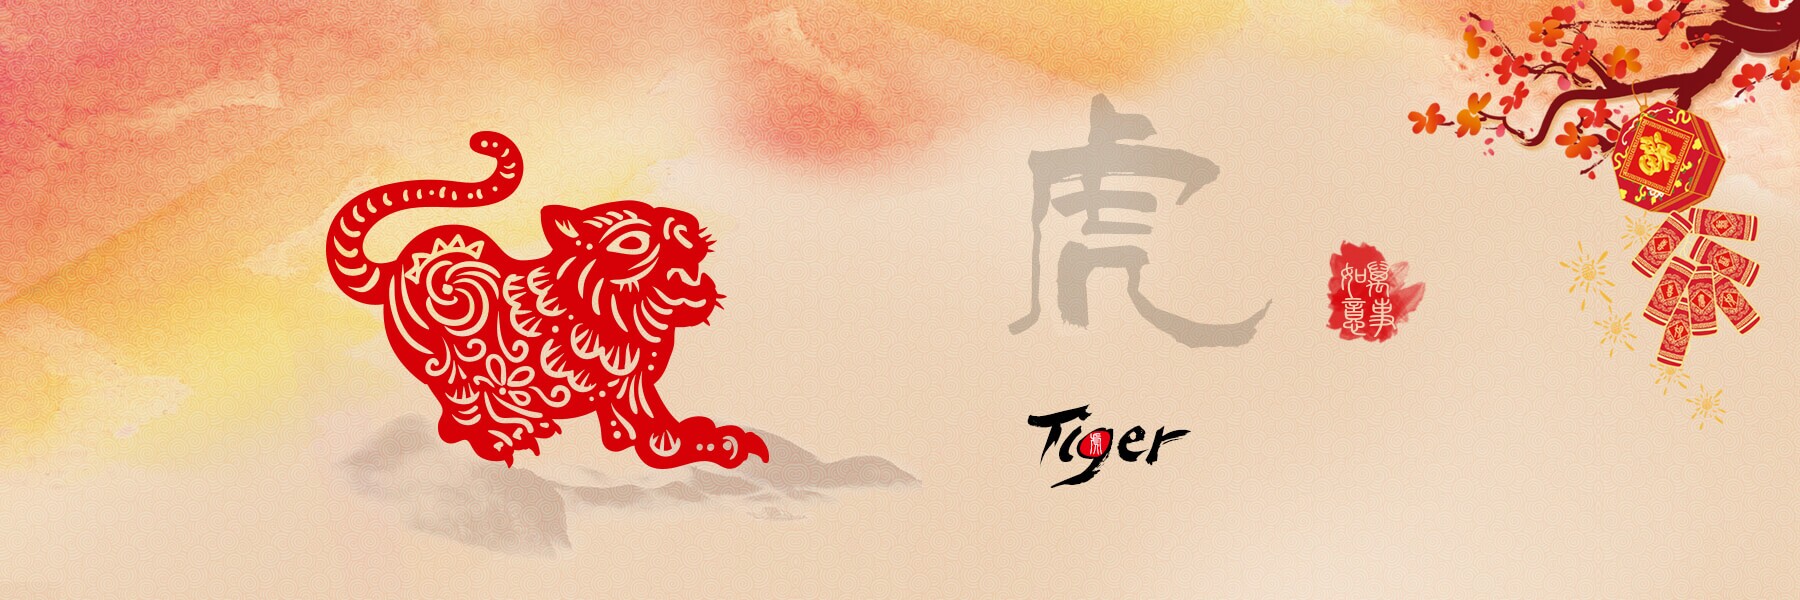 Dragon love and compatibility tiger Tiger Love